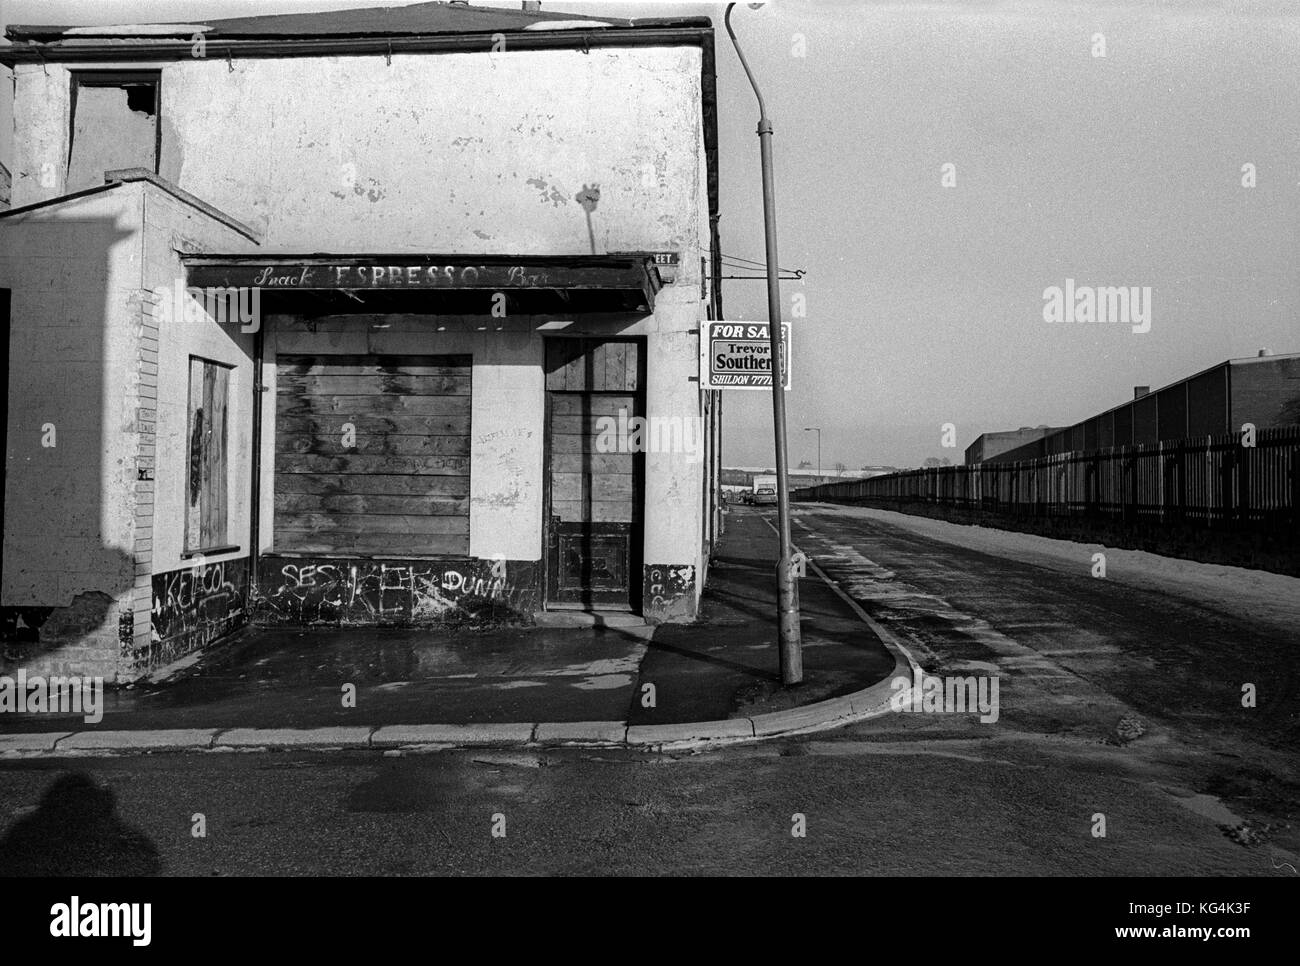 Shildon dans le comté de Durham 1986s. Une fois une ville connue comme "le berceau des chemins de fer'. En 1984, le collaped railworks et laissé une communauté du chômage et le déclin économique de la prochaine décennie. Banque D'Images